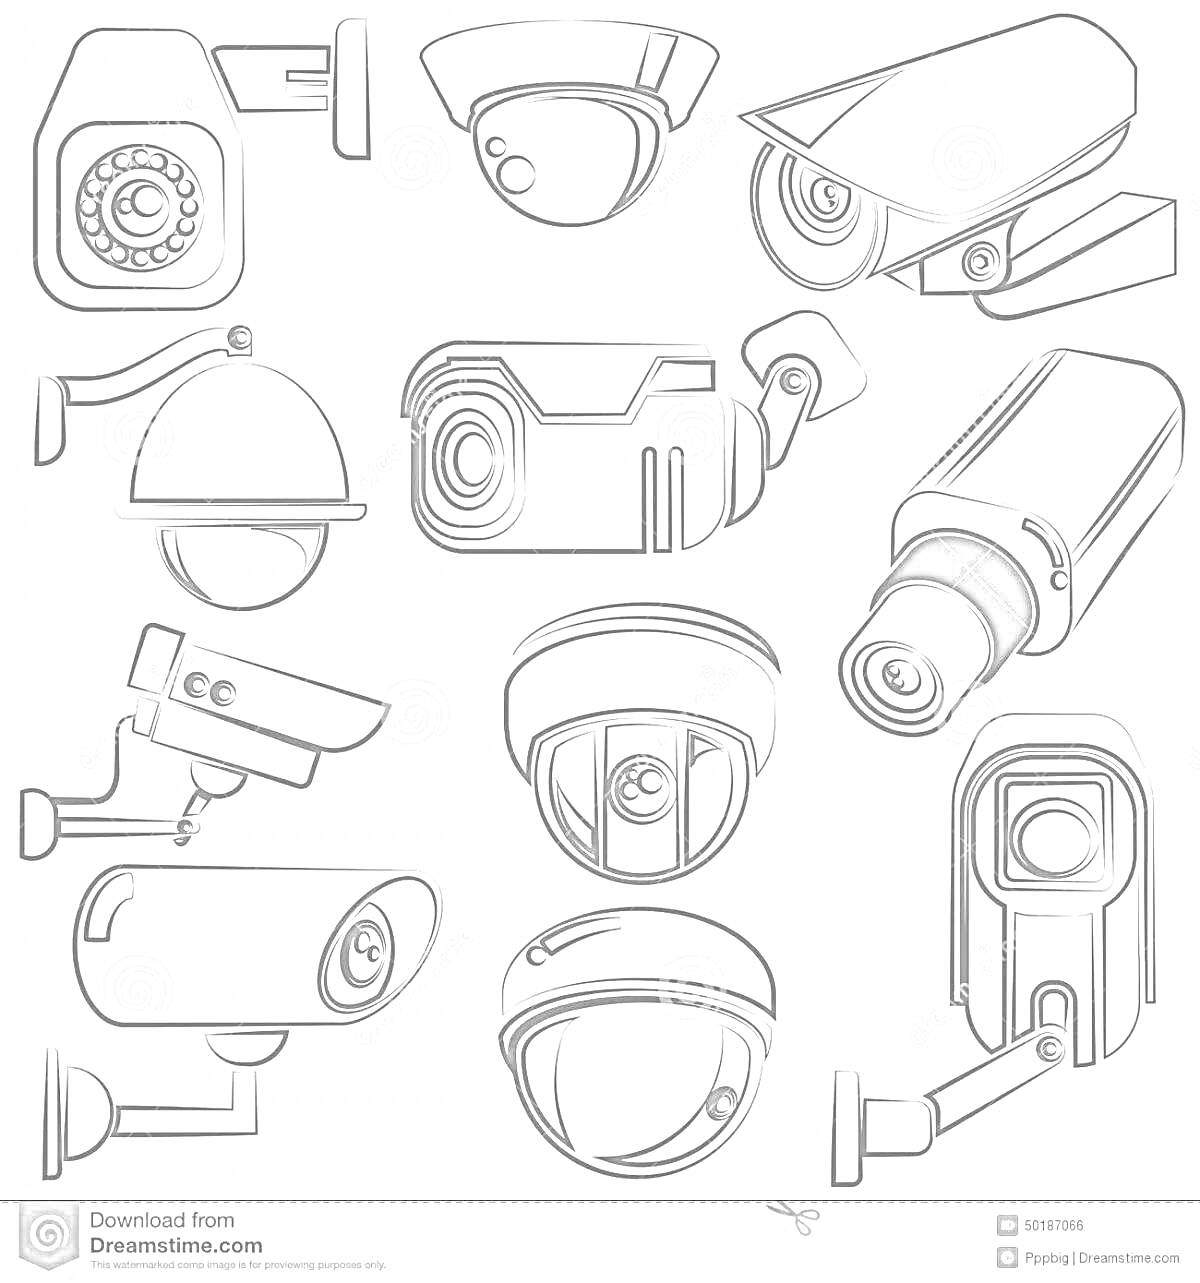 Разные типы видеокамер: купольные, цилиндрические, уличные и объективные камеры